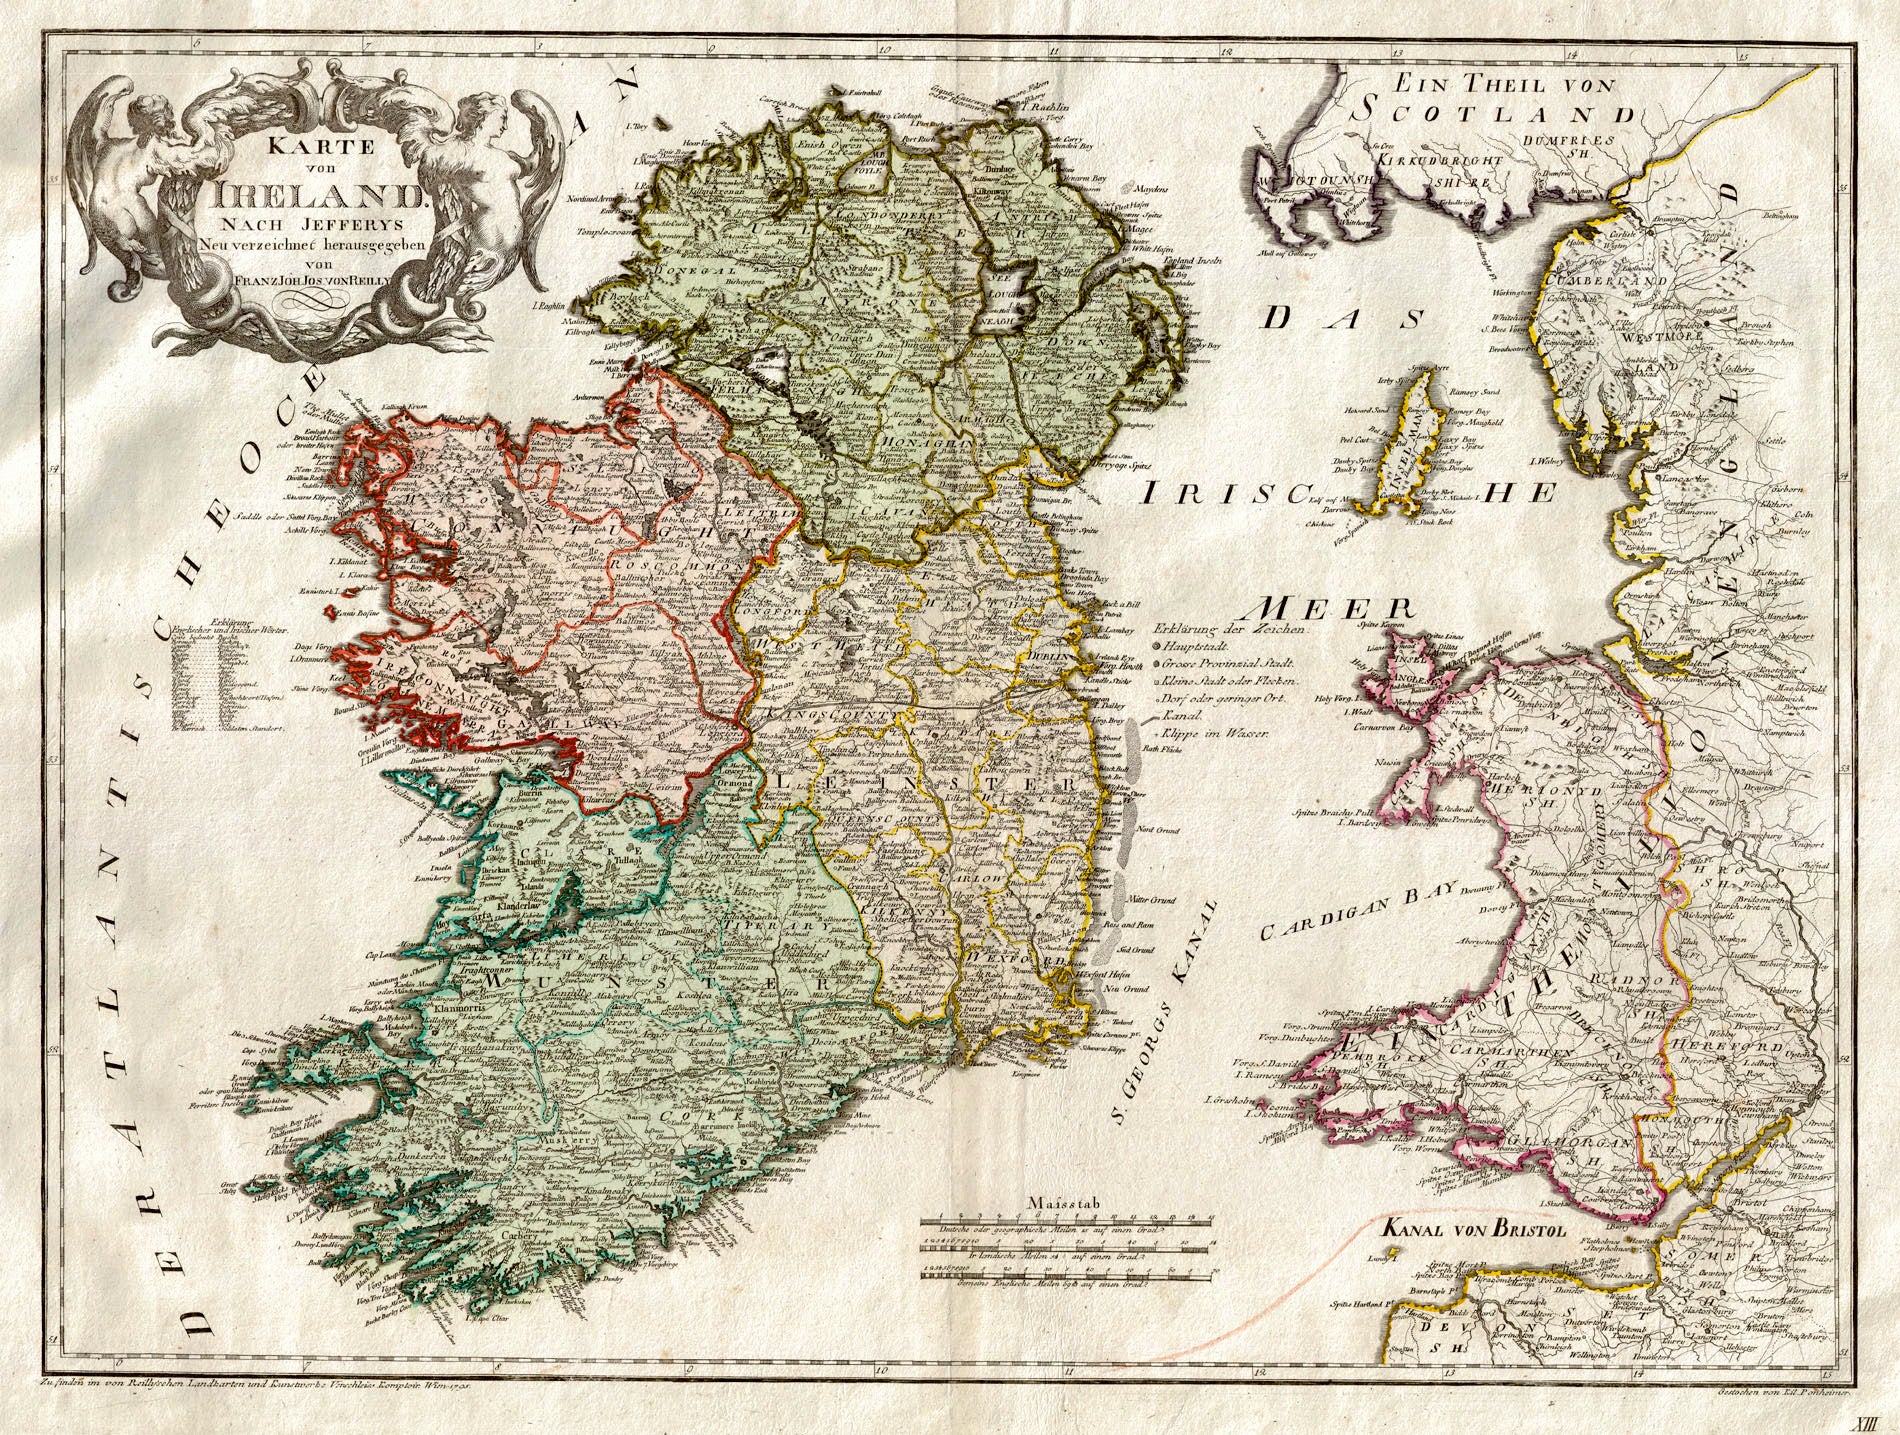 (Ireland) Karte Von Ireland Nach Jefferys..